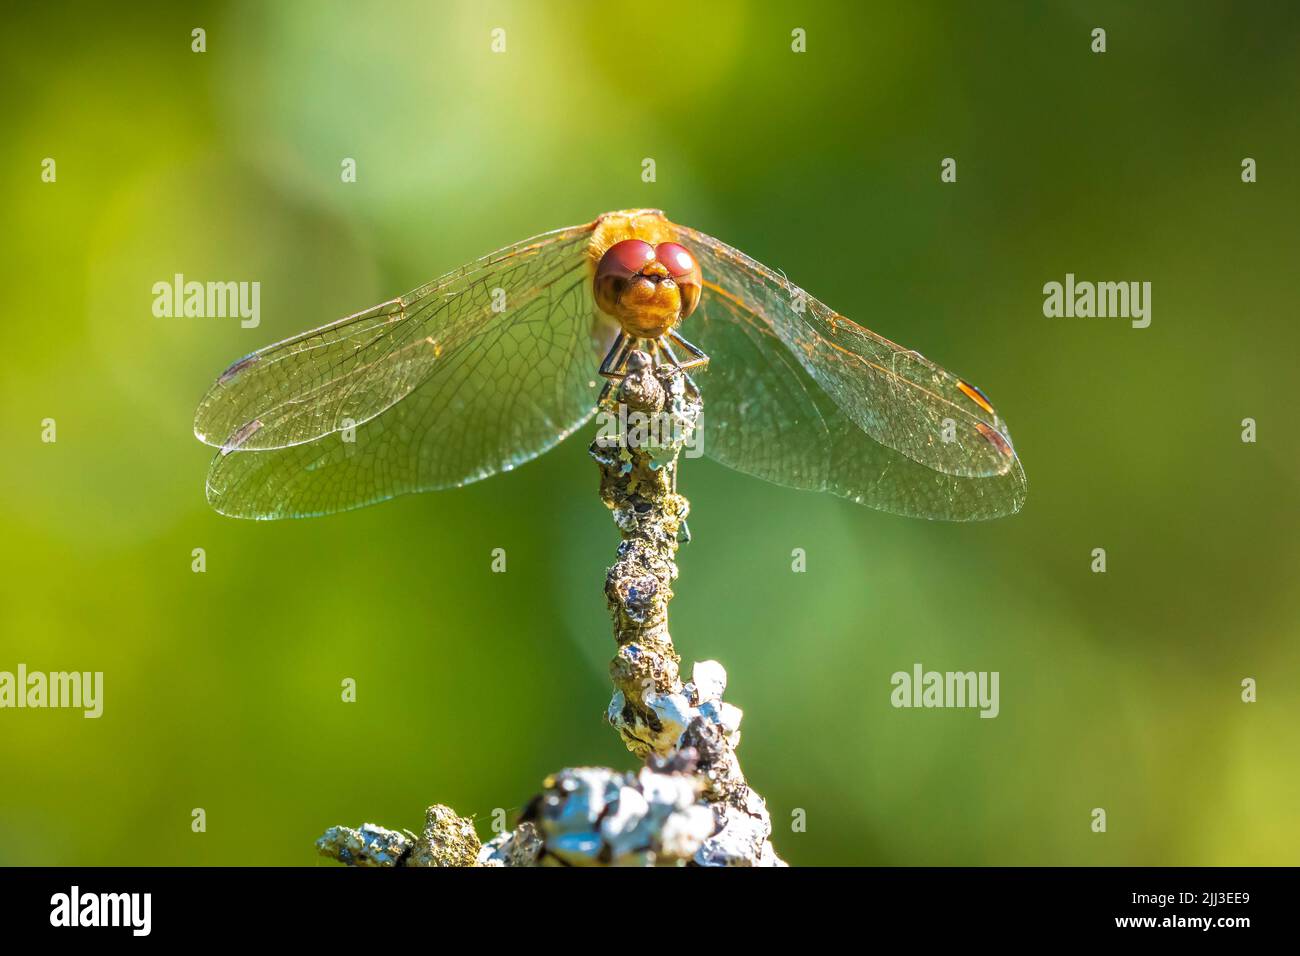 Primer plano de un vagrante macho, Sympetrum vulgatum, libélula colgando de la vegetación Foto de stock